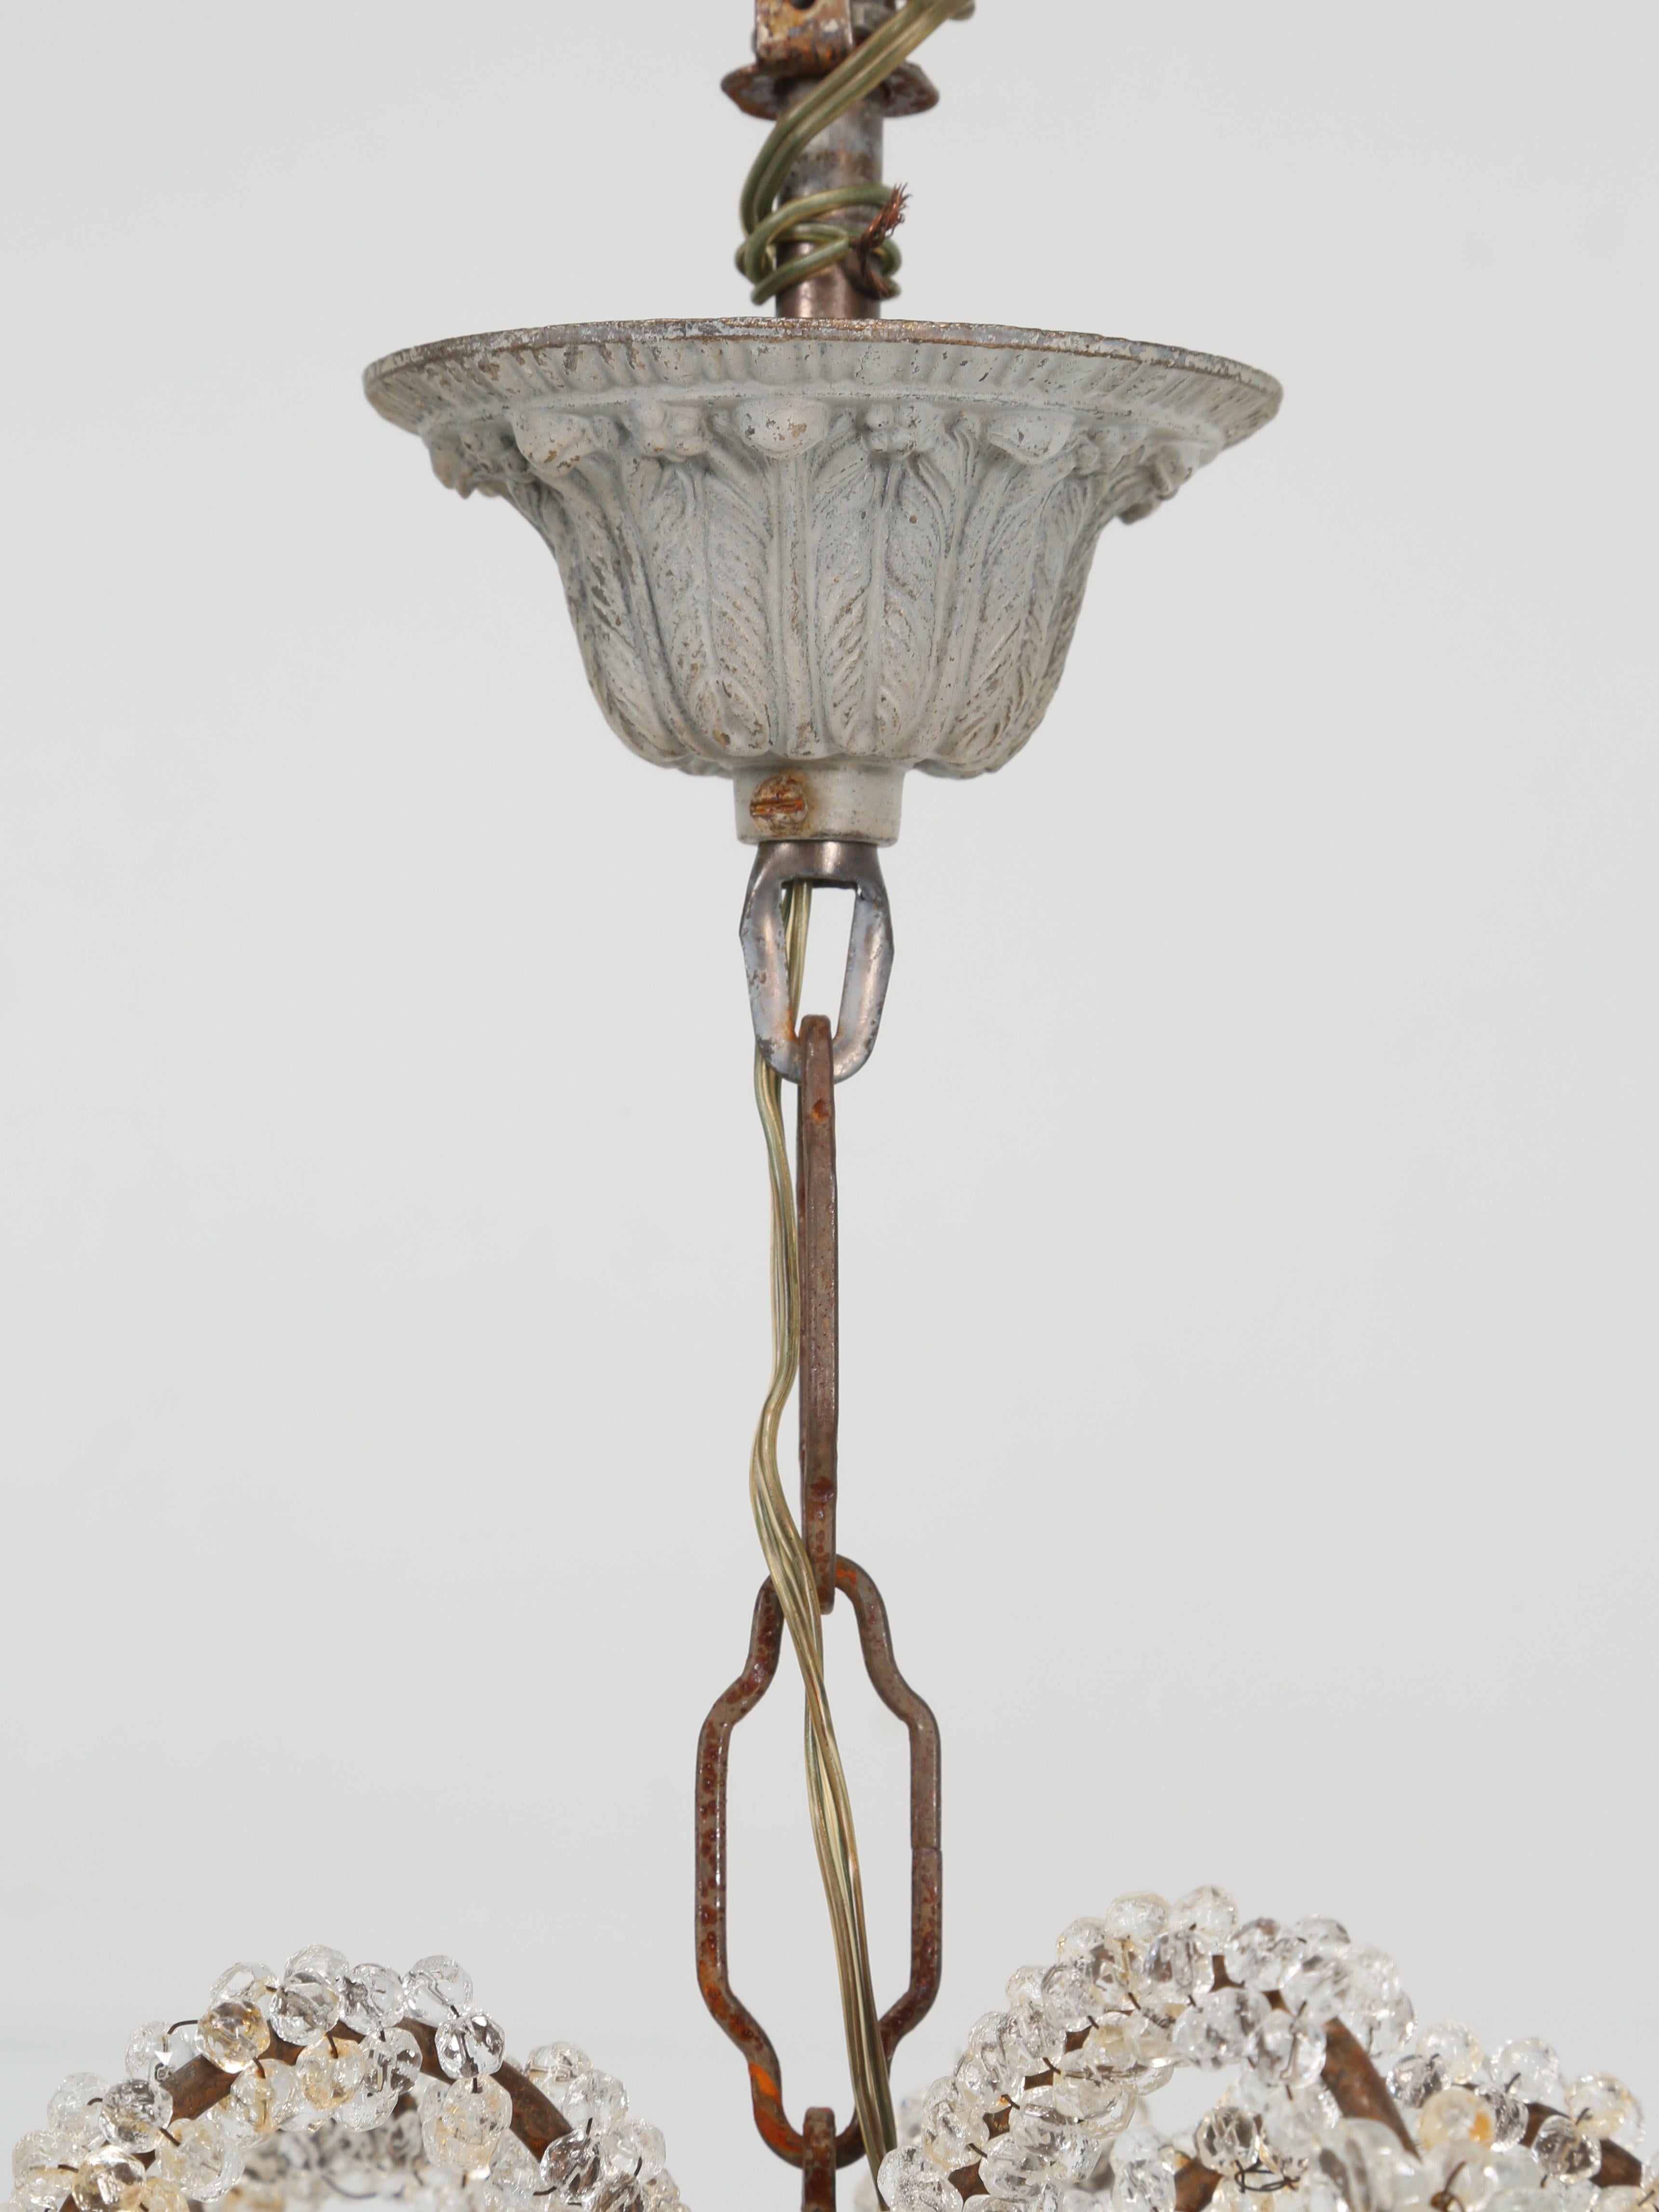 Vintage Italian chandelier in a petite 13